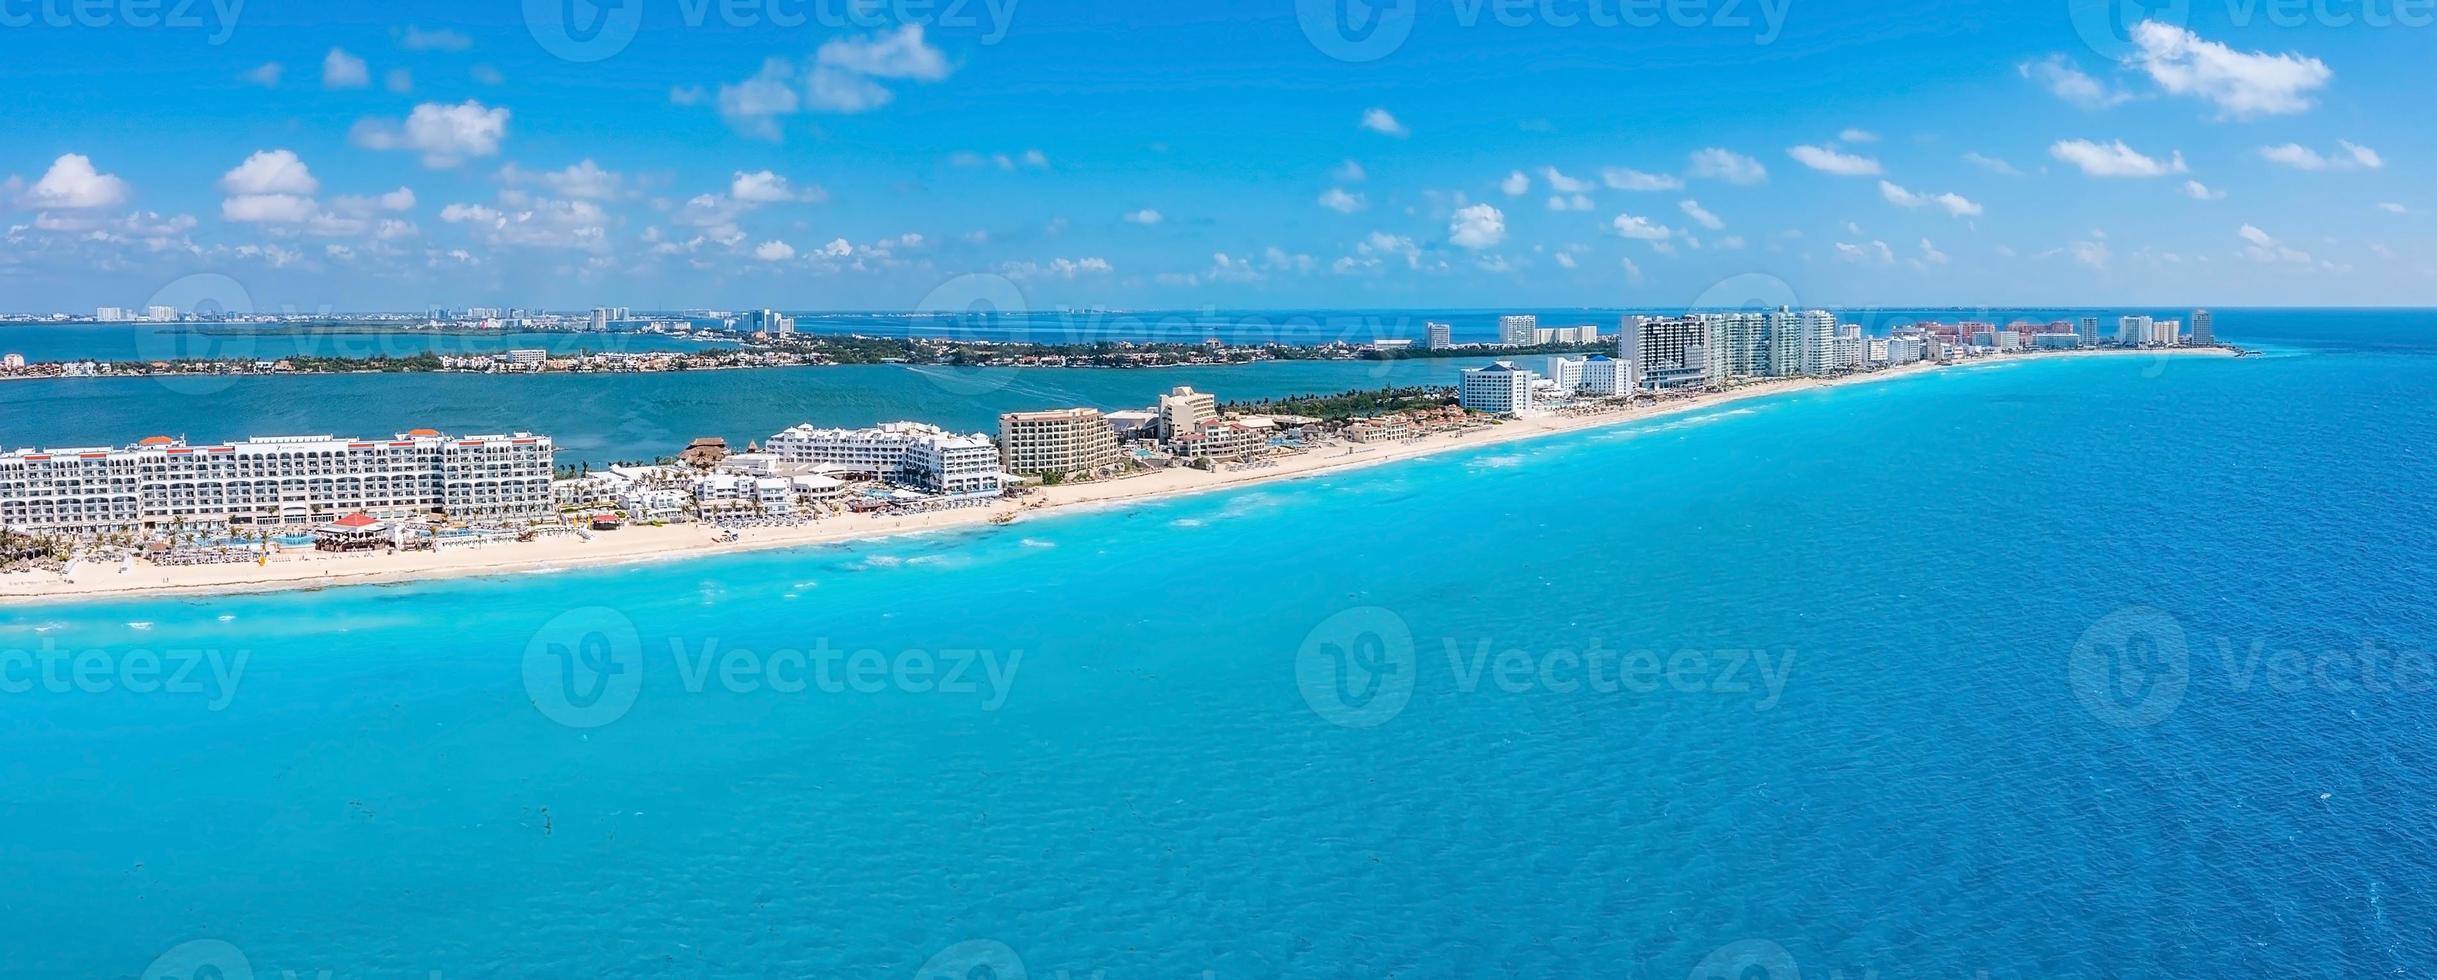 Aerial view of Punta Norte beach, Cancun, Mexico. photo